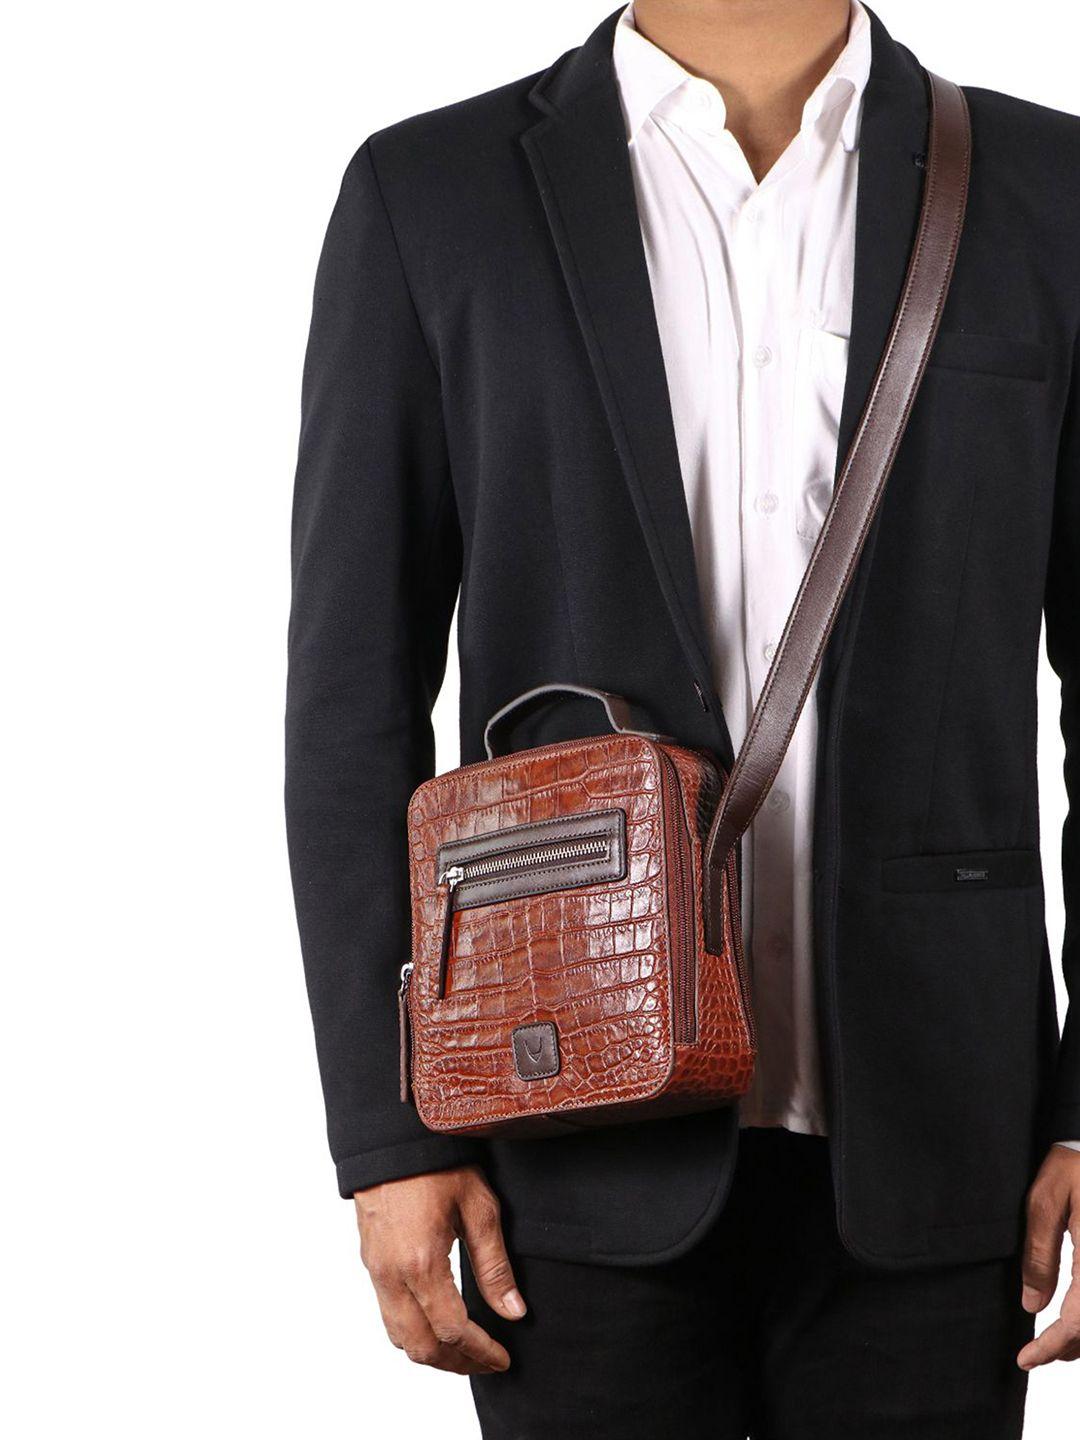 hidesign-men-textured-leather-messenger-bag